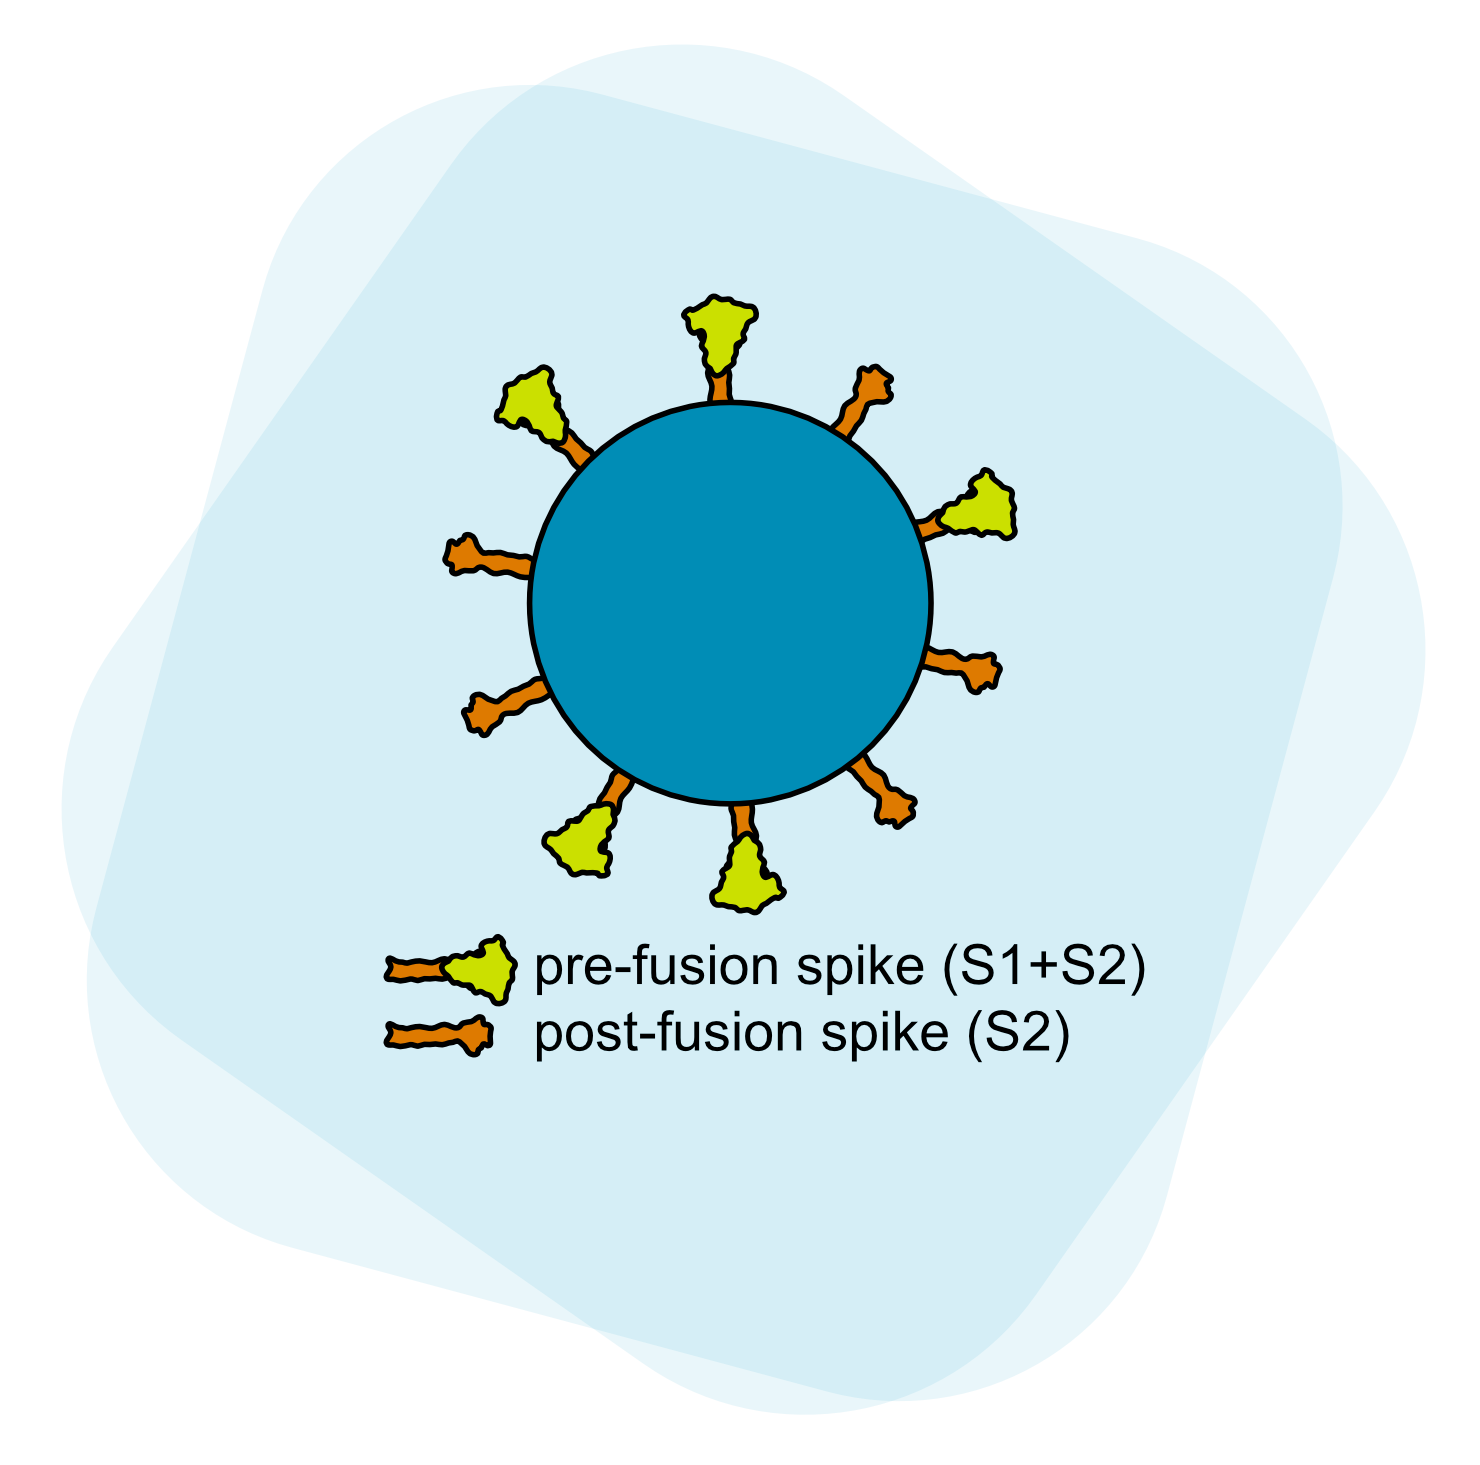 SARS-CoV-2 virion